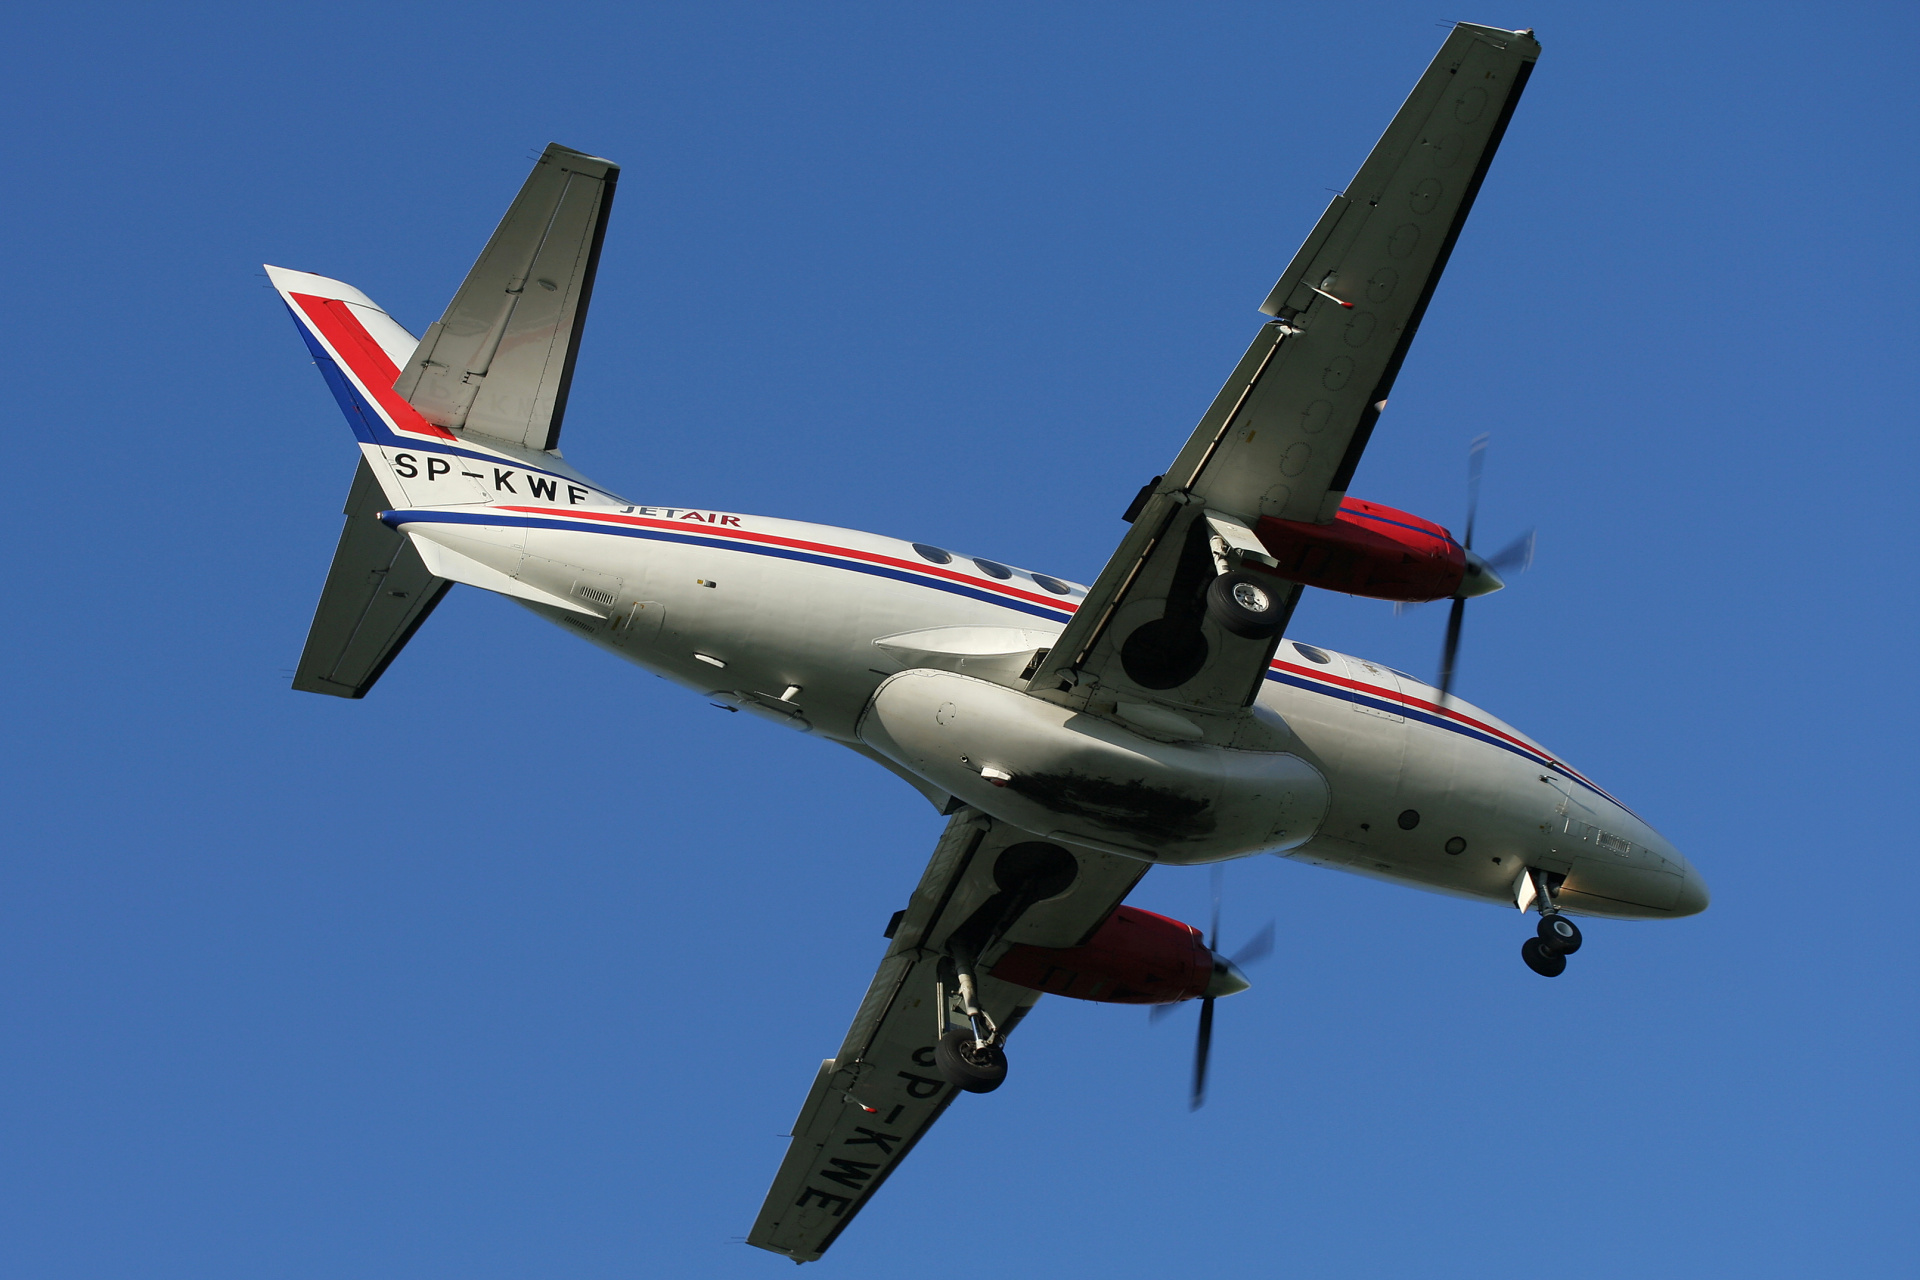 SP-KWE, Jet Air (Aircraft » EPWA Spotting » BAe Jetstream 32)